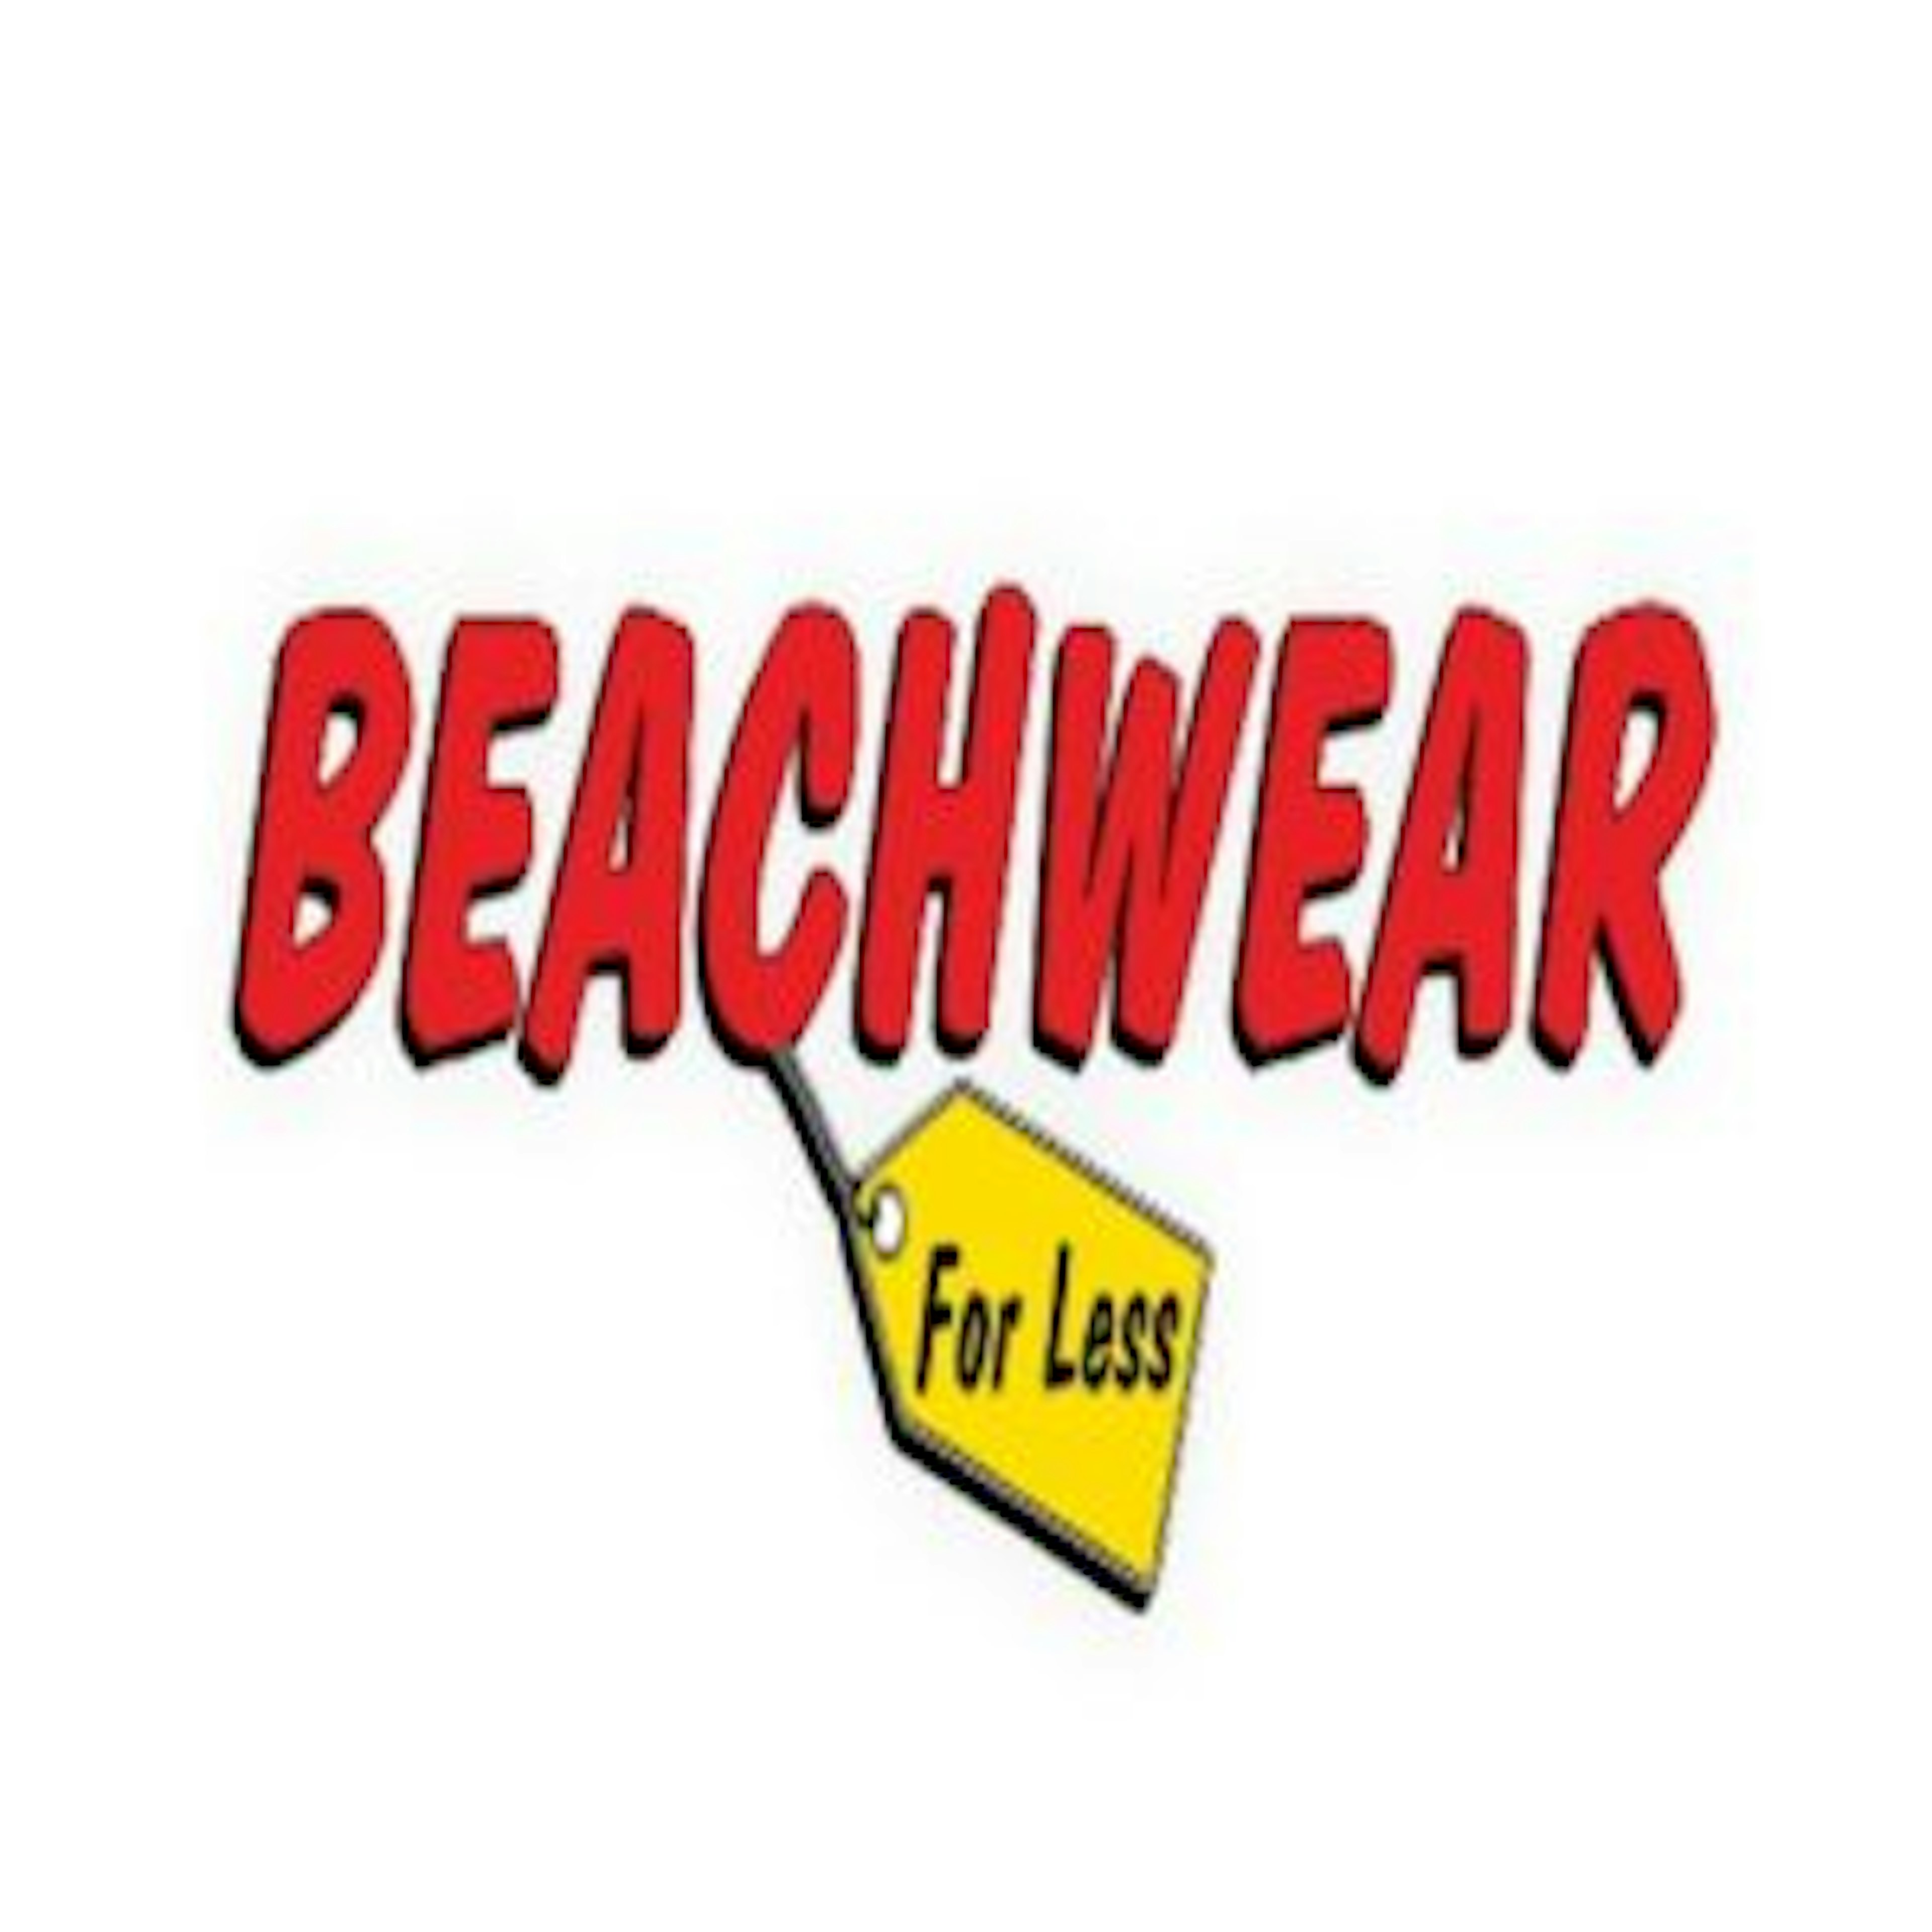 Beachwear For Less